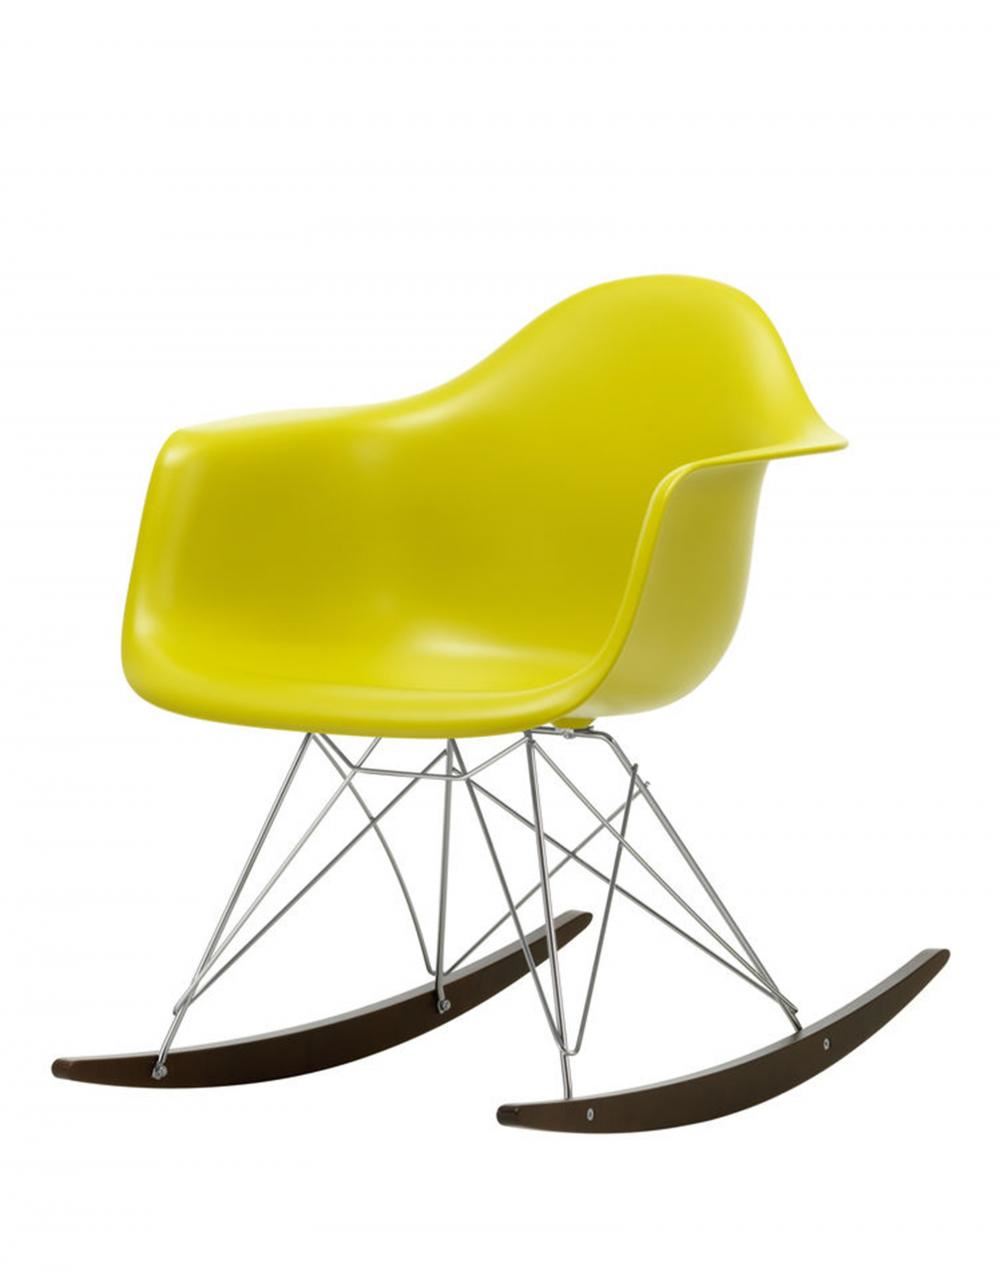 Eames Rar Plastic Rocking Chair Chrome Base Mustard Dark Maple